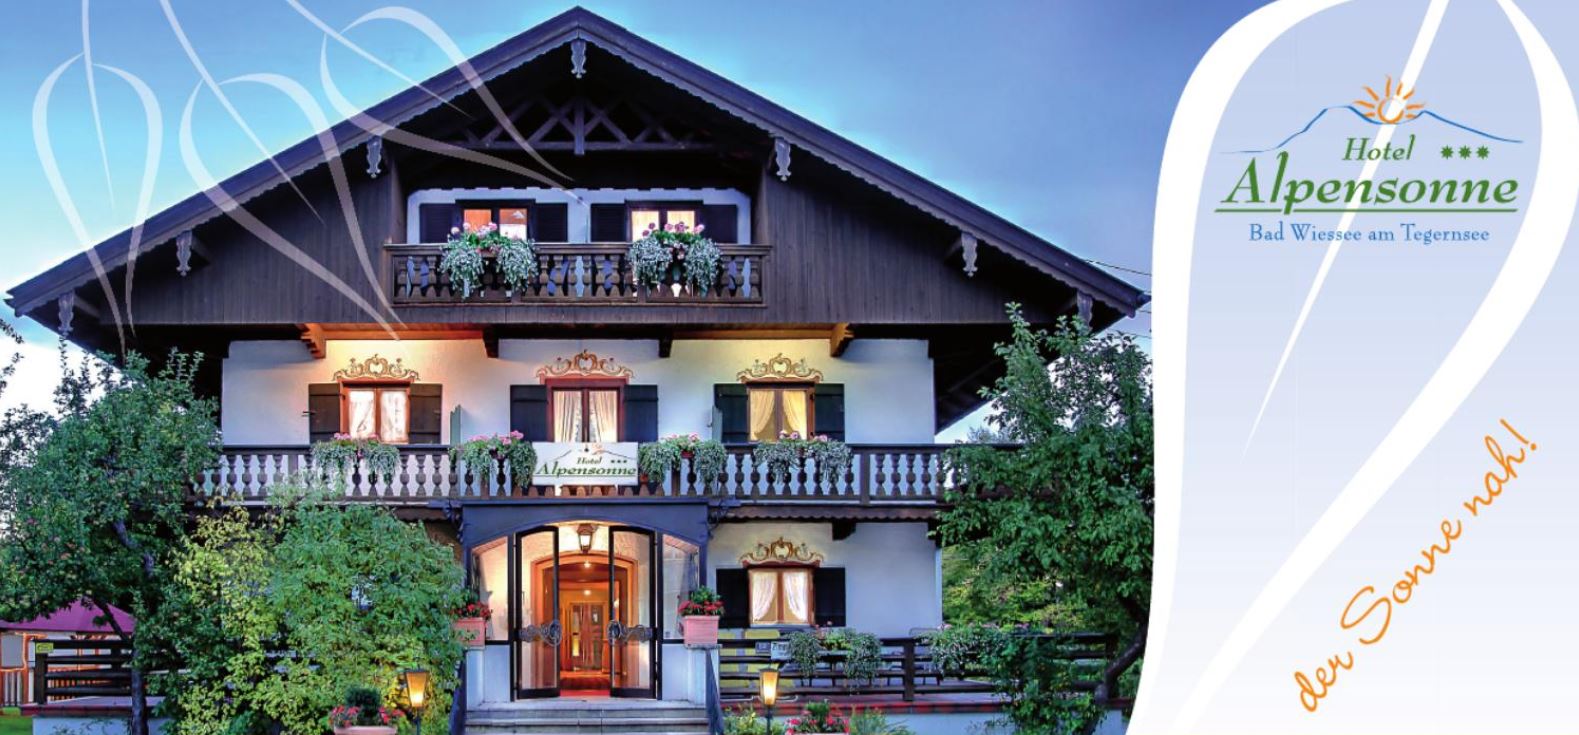 Kuscheltage im Hotel Alpensonne am Tegernsse - Bayern